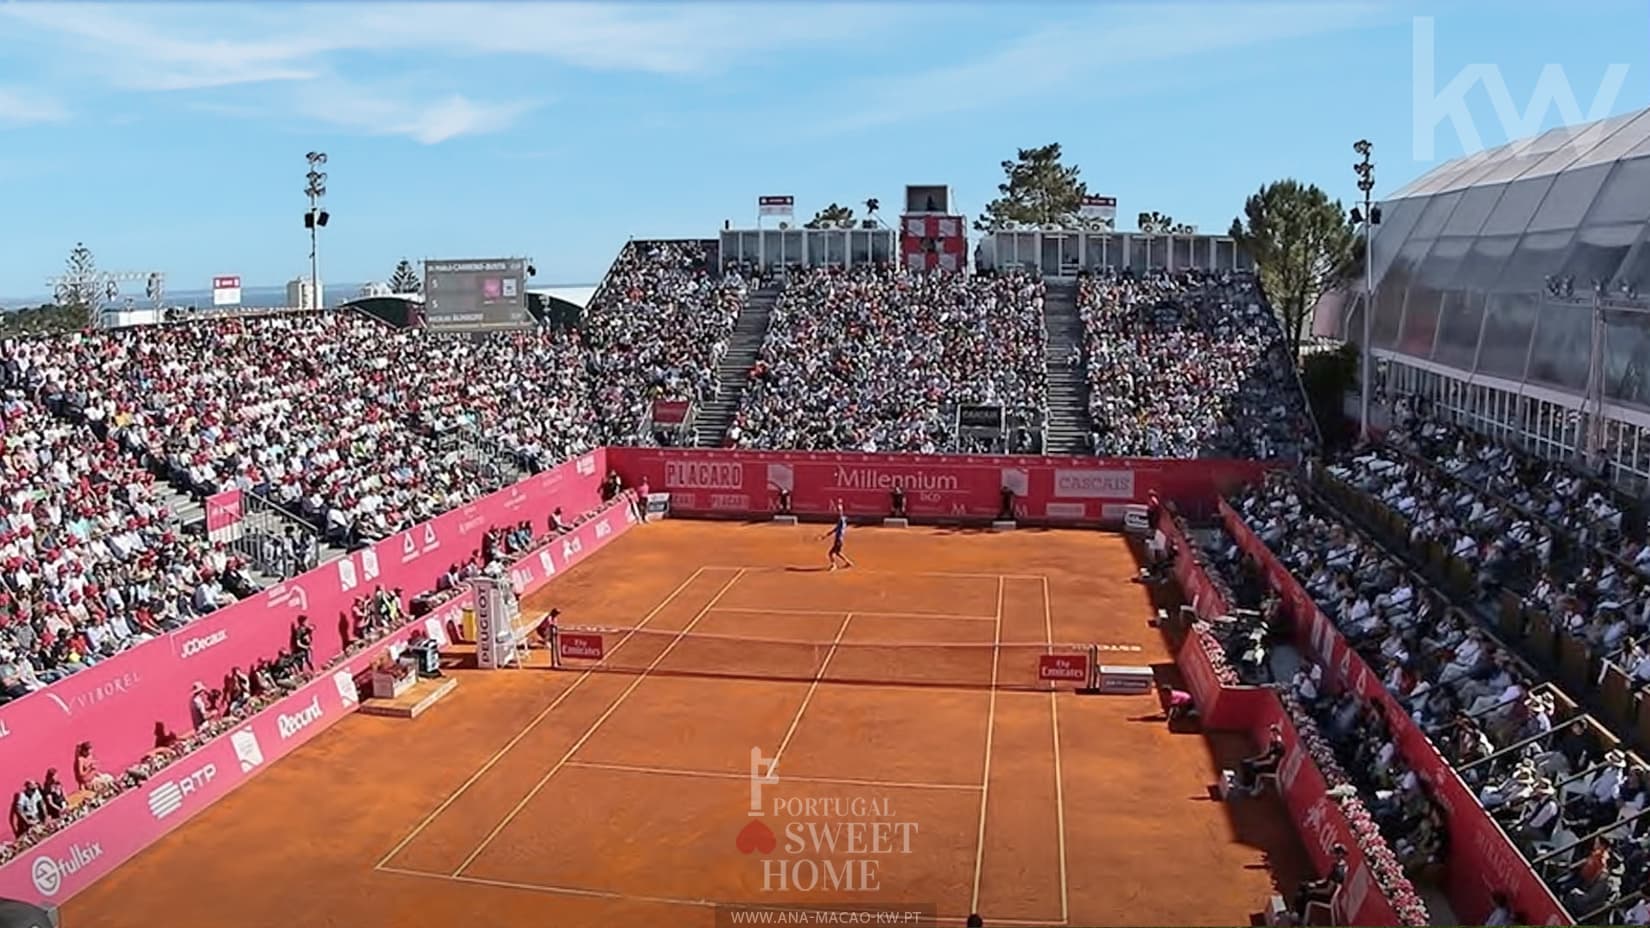 Estoril Tennis Court